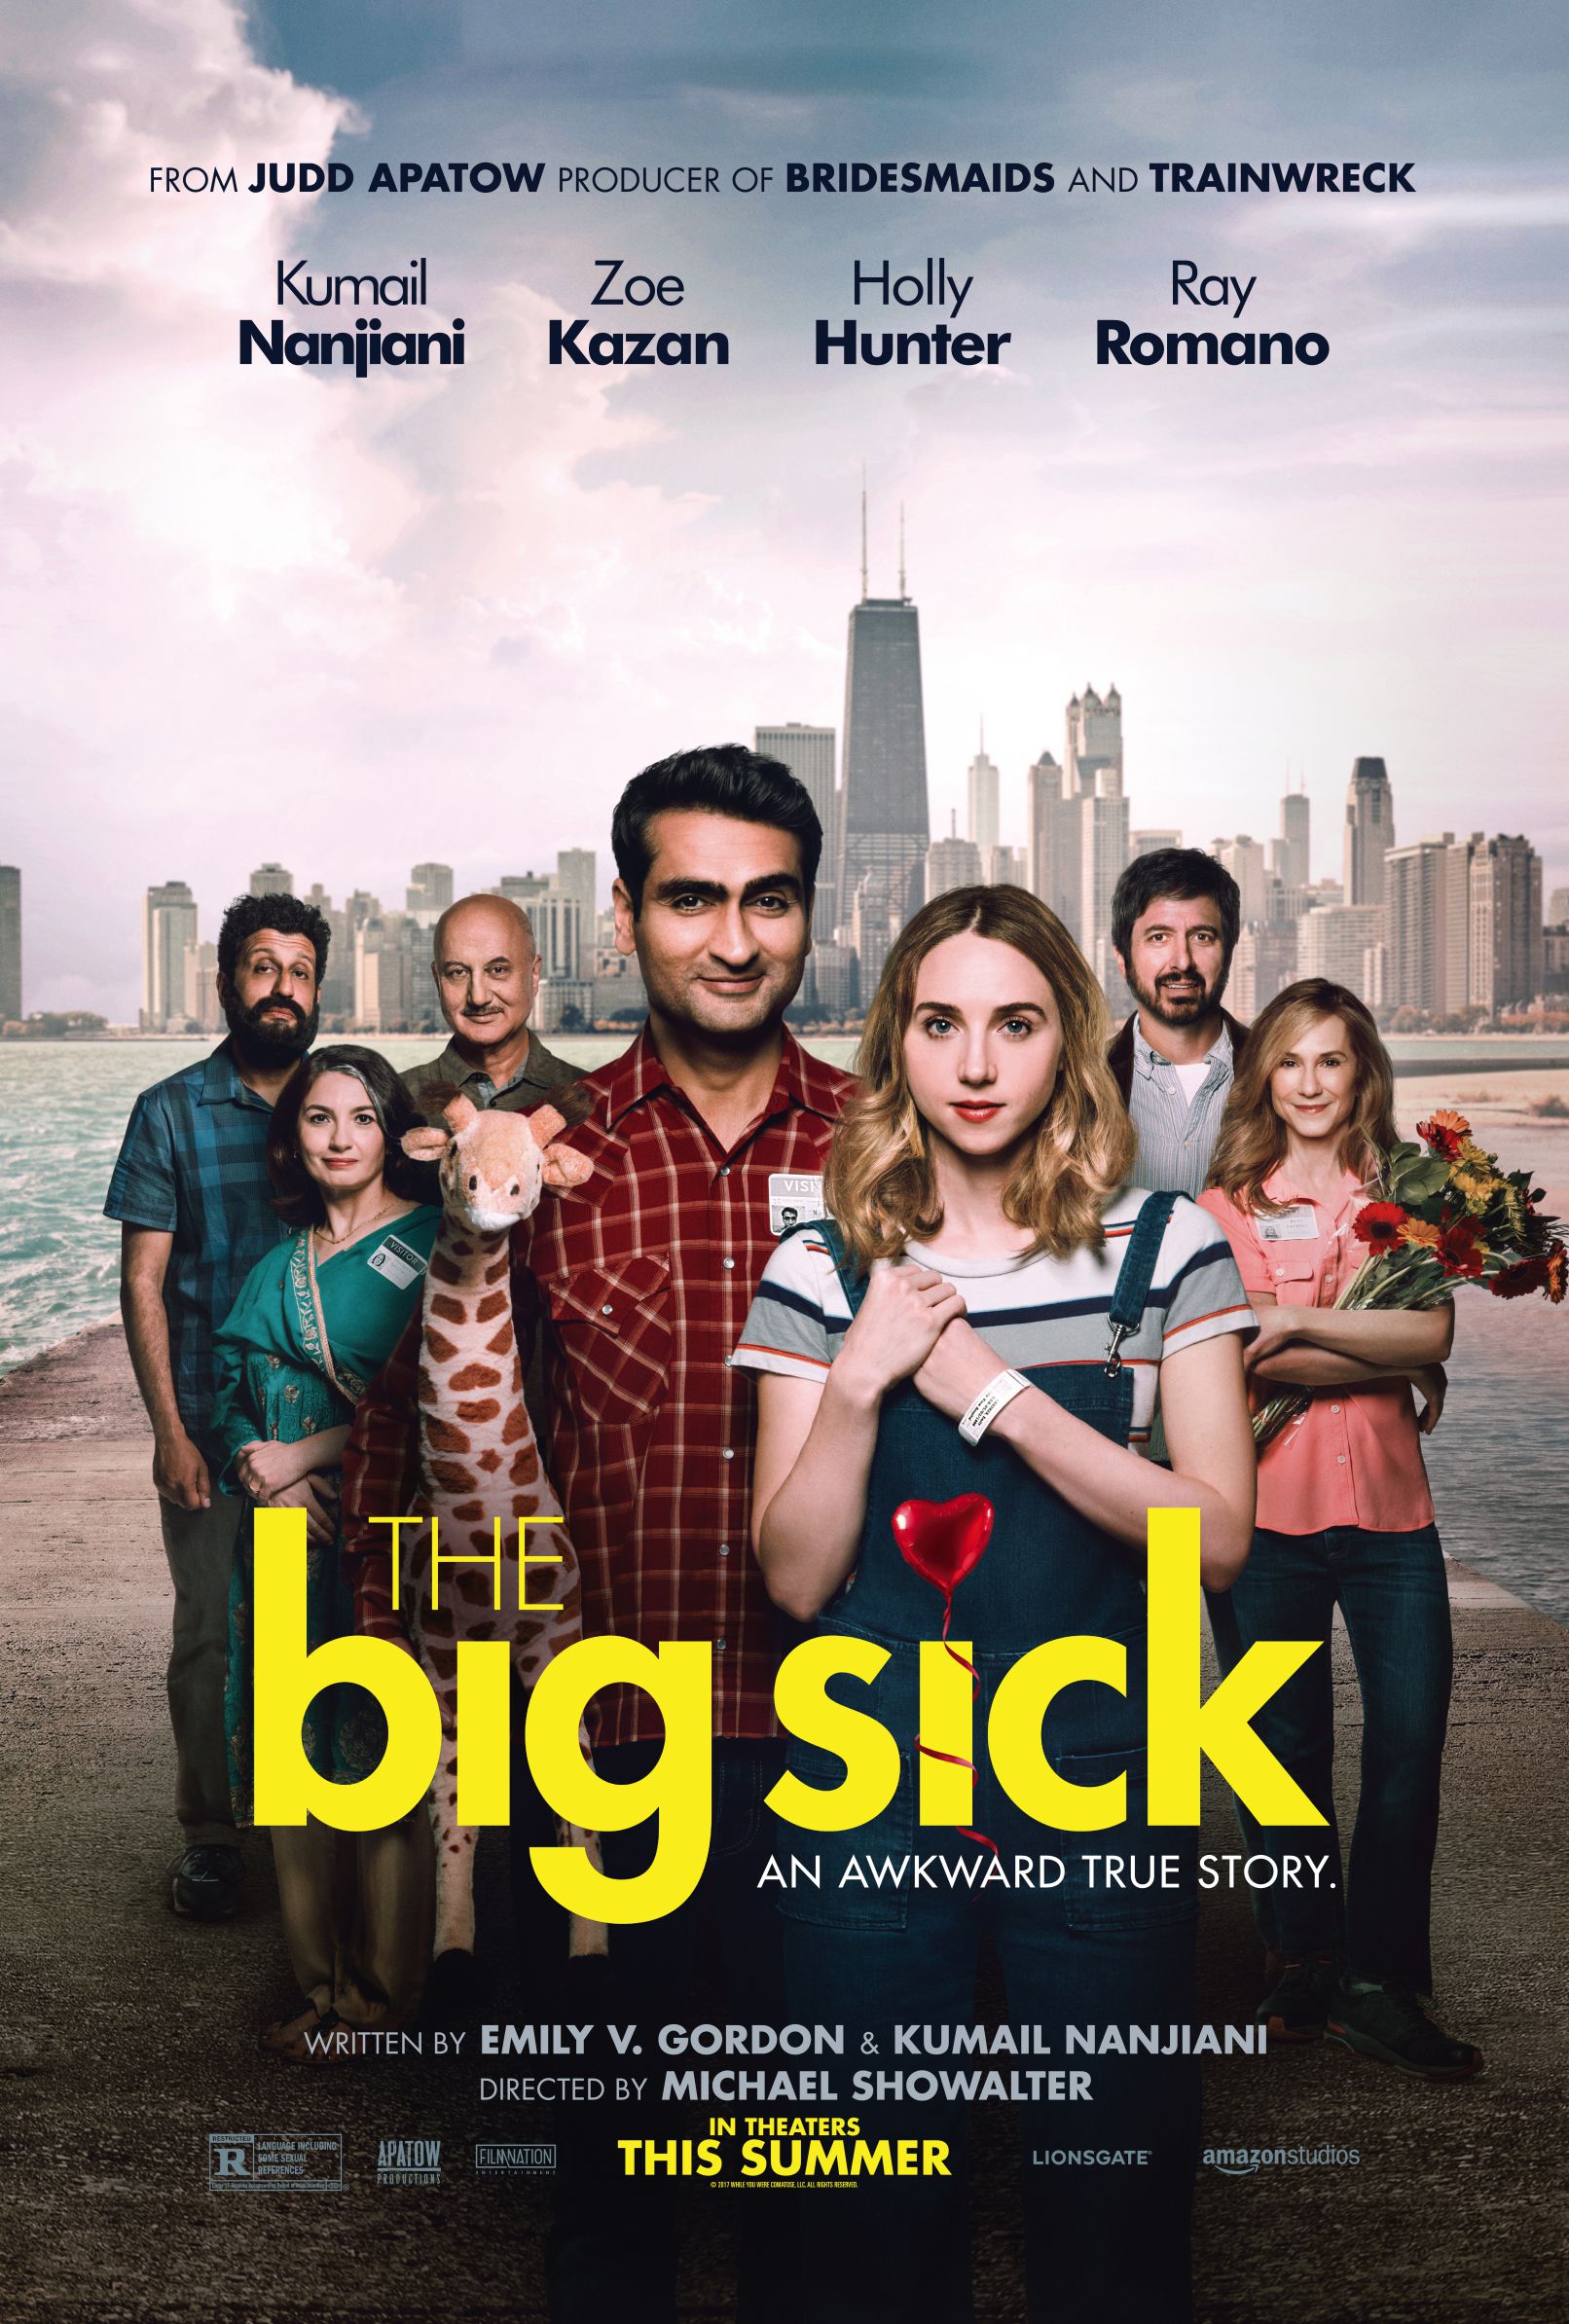 The Big Sick (2017) ★★★☆☆